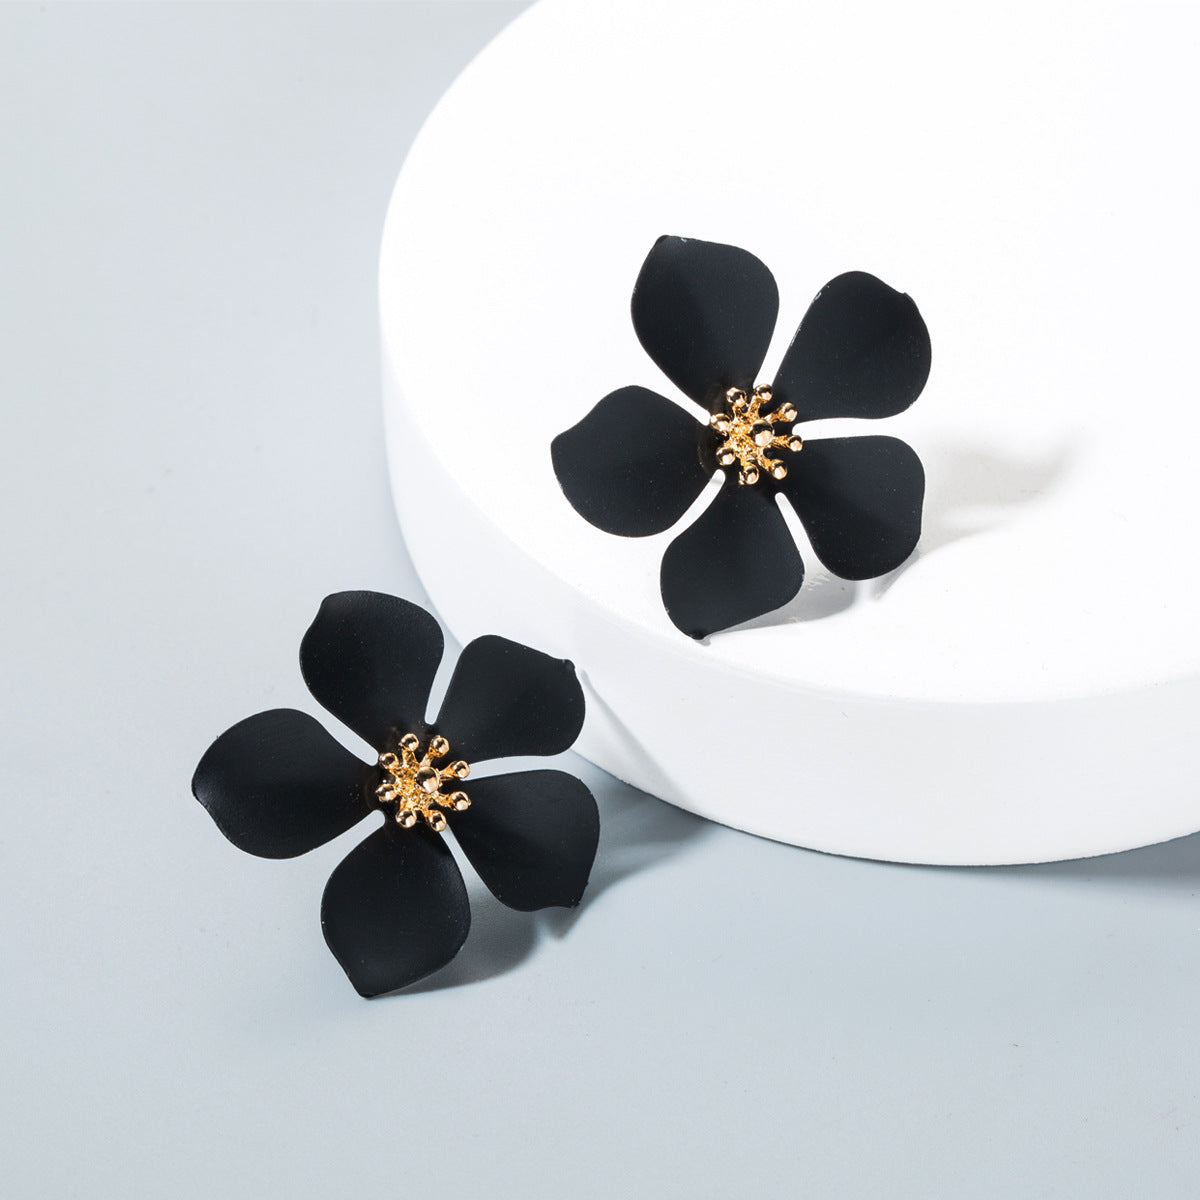 60s Style Floral Earrings, Vintage Inspired Earrings, Mod Floral Earrings